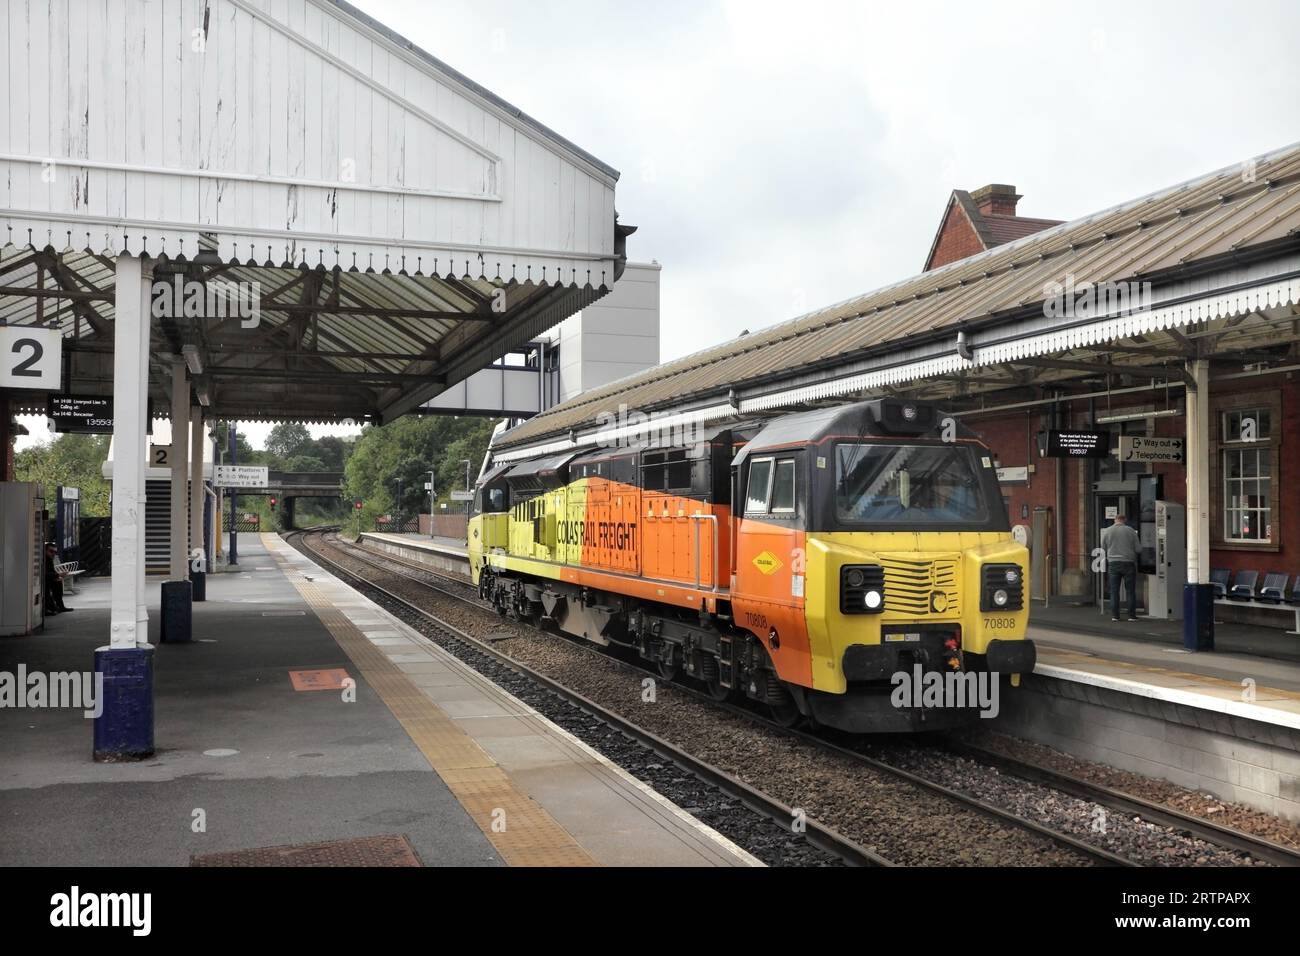 Die Diesellokomotive 70 der Colas Rail Freight Class 70808 durchquert den Bahnhof Scunthorpe als Kleinlokomotive 0E32 1039 Crewe – Barnetby am 14.9.23. Stockfoto